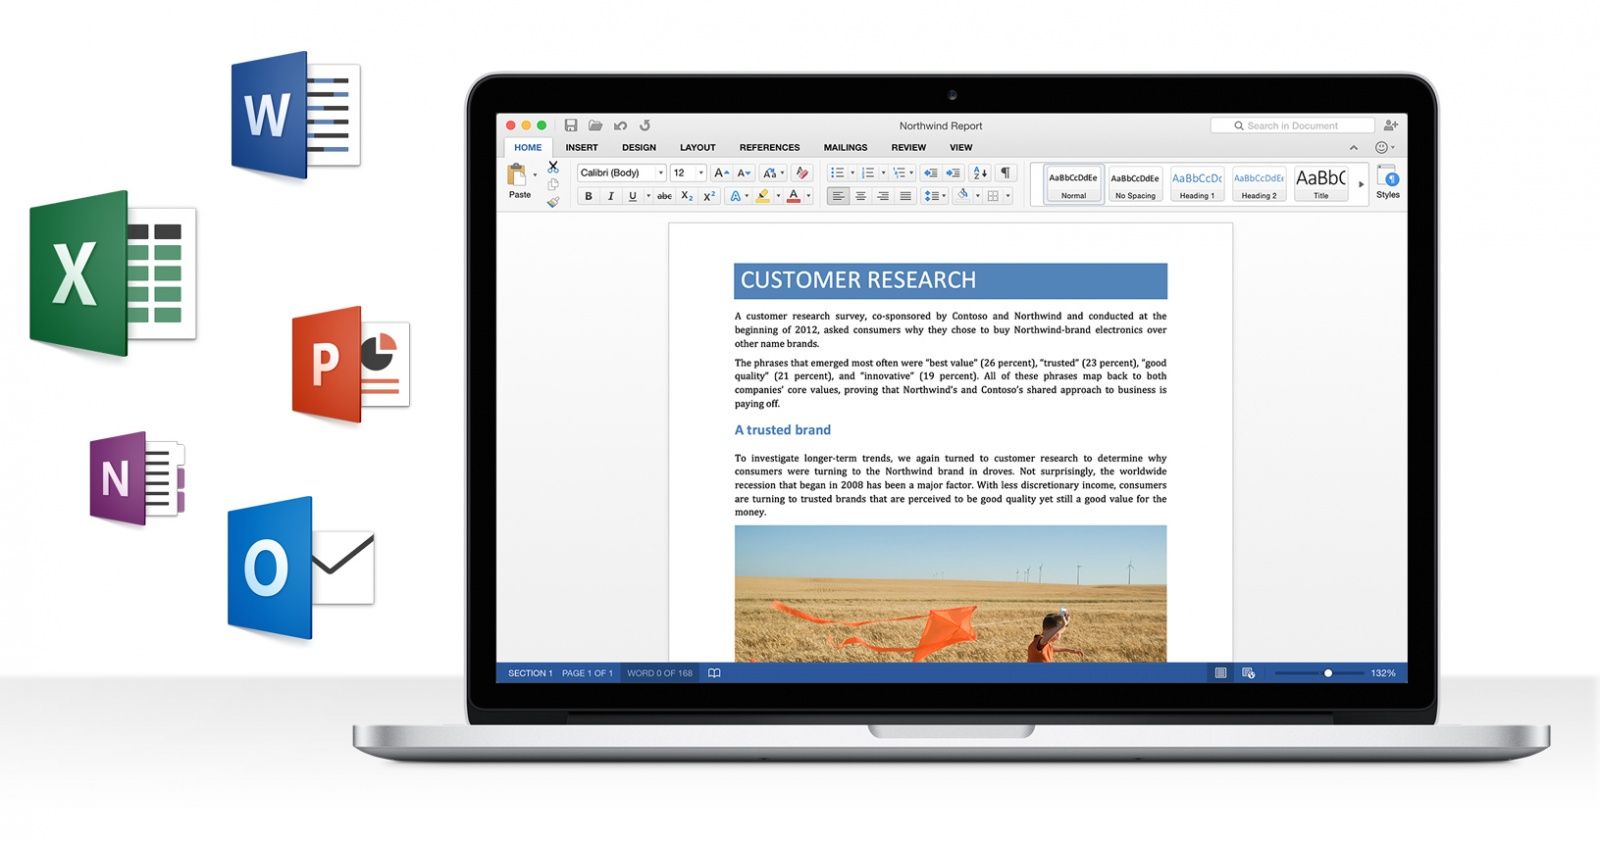 Microsoft encerrará distribuição e suporte de seguraça do Office 2013, para você migrar para  o Office 2016